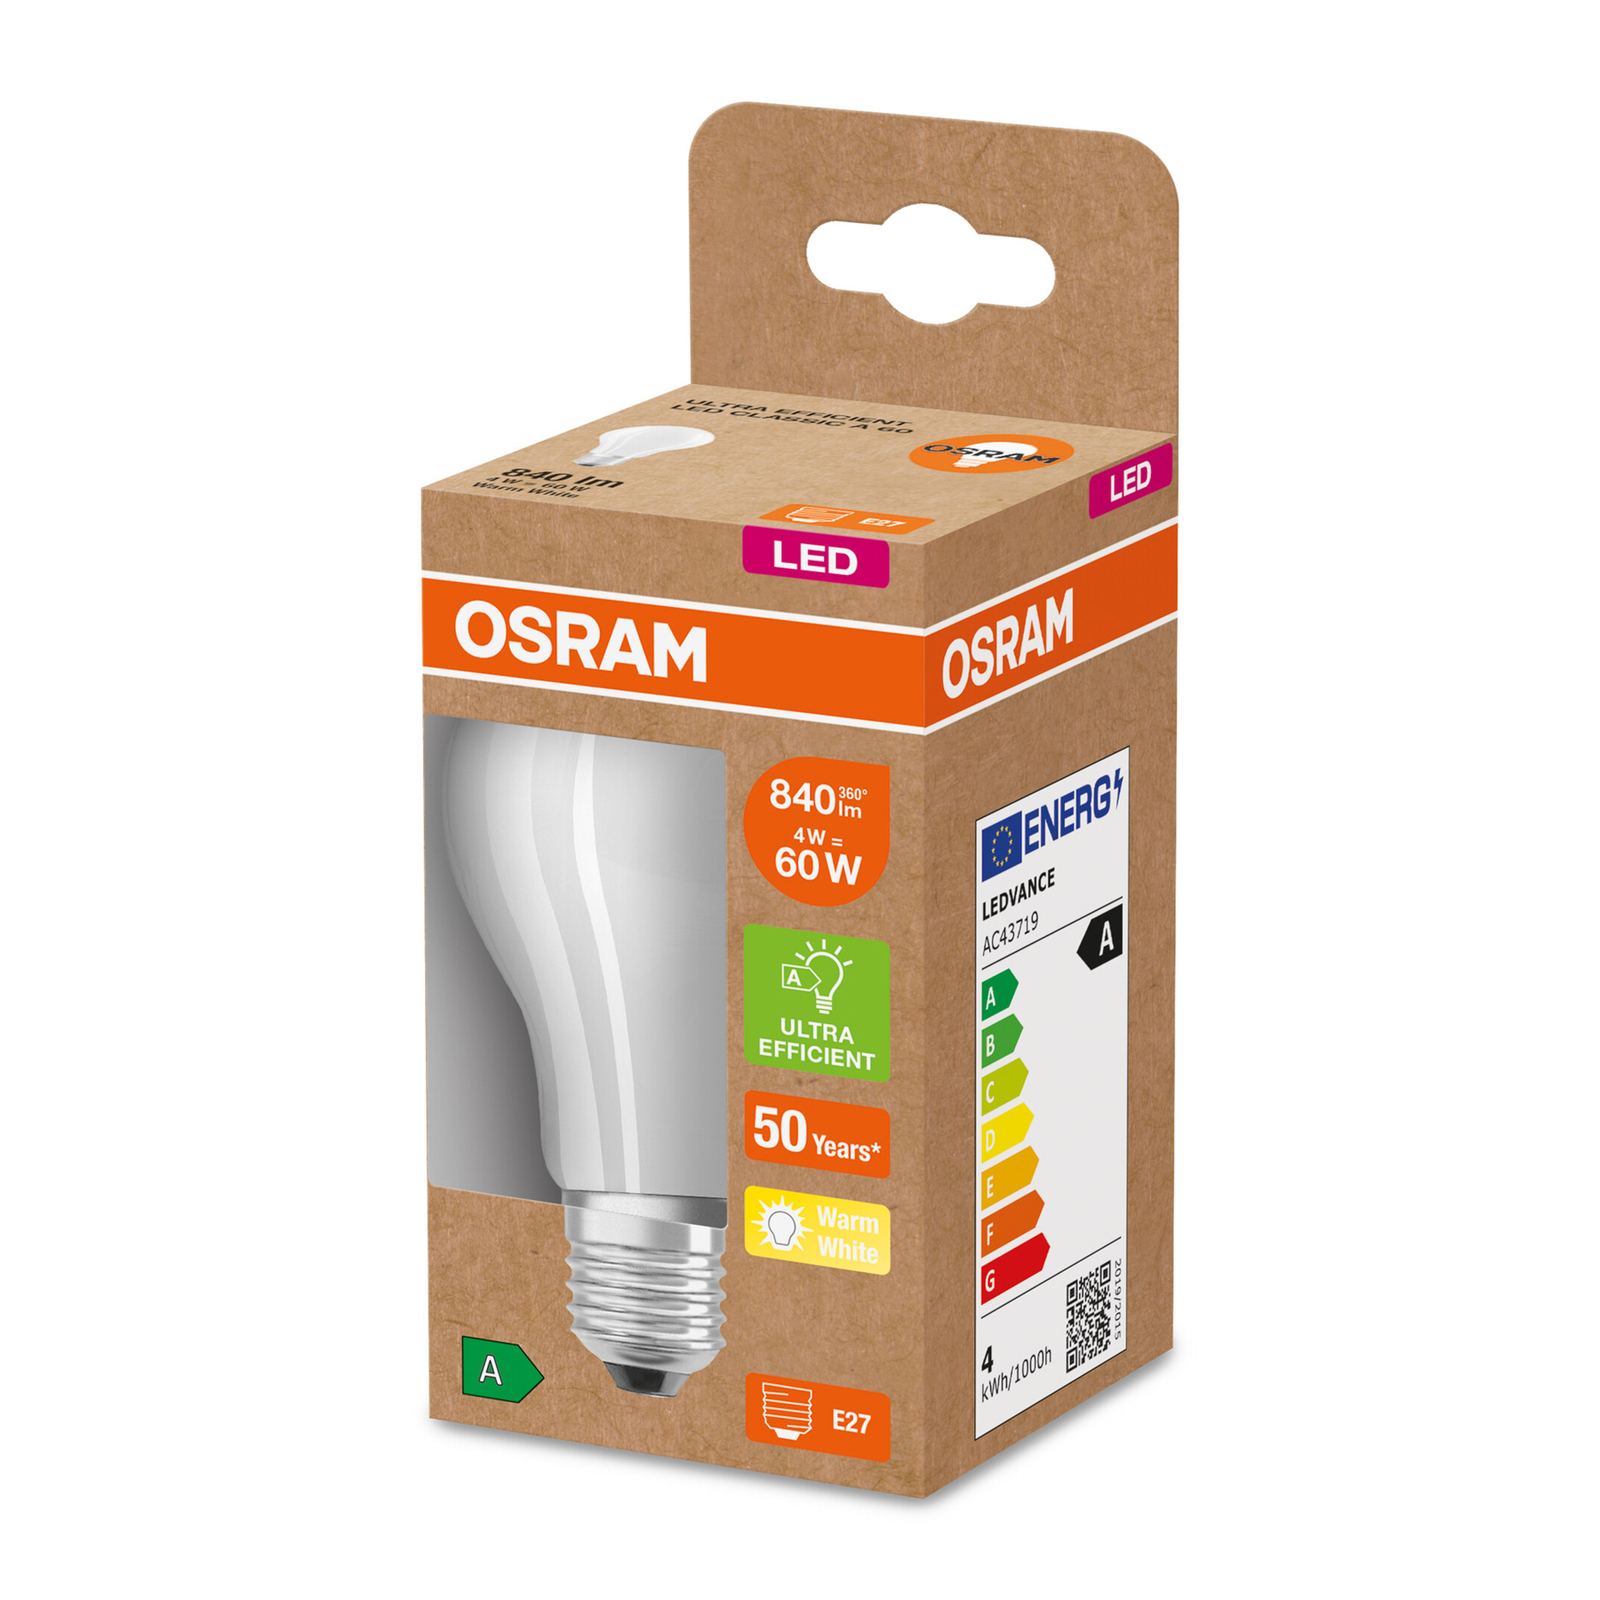 OSRAM ampoule LED E27 A60 3,8W 840lm 3.000K mat